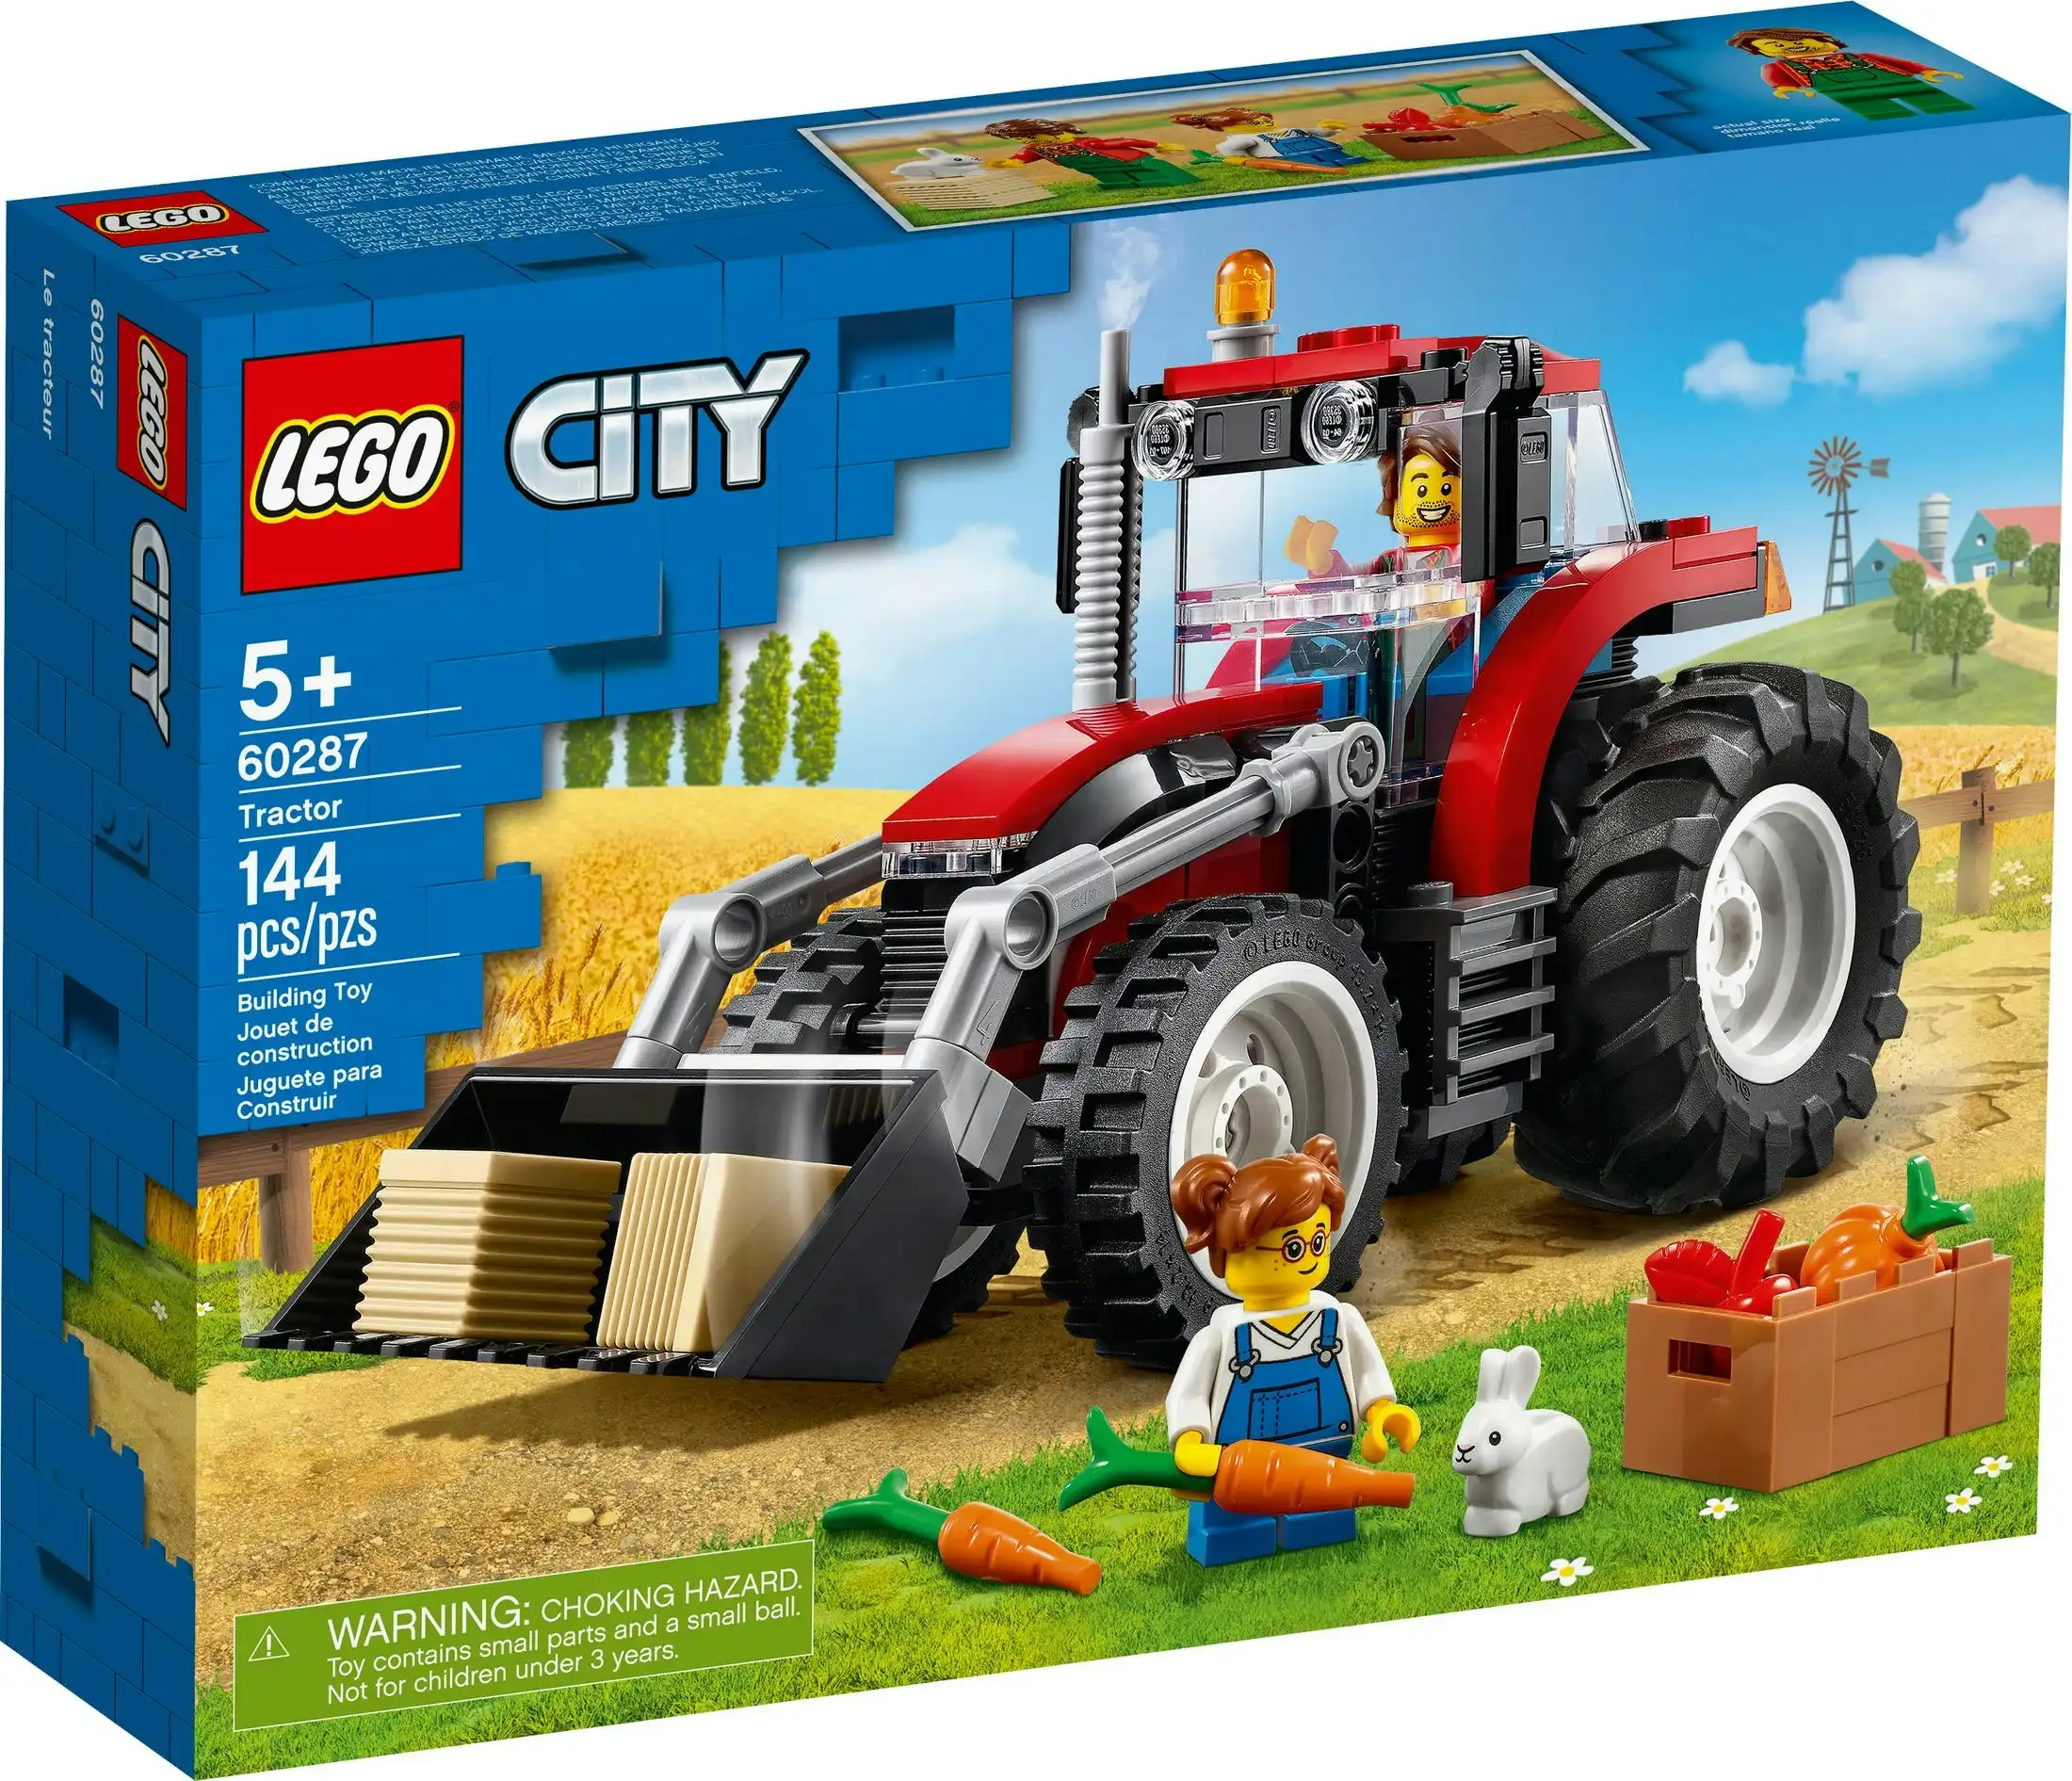 LEGO 60287 Tractor - City